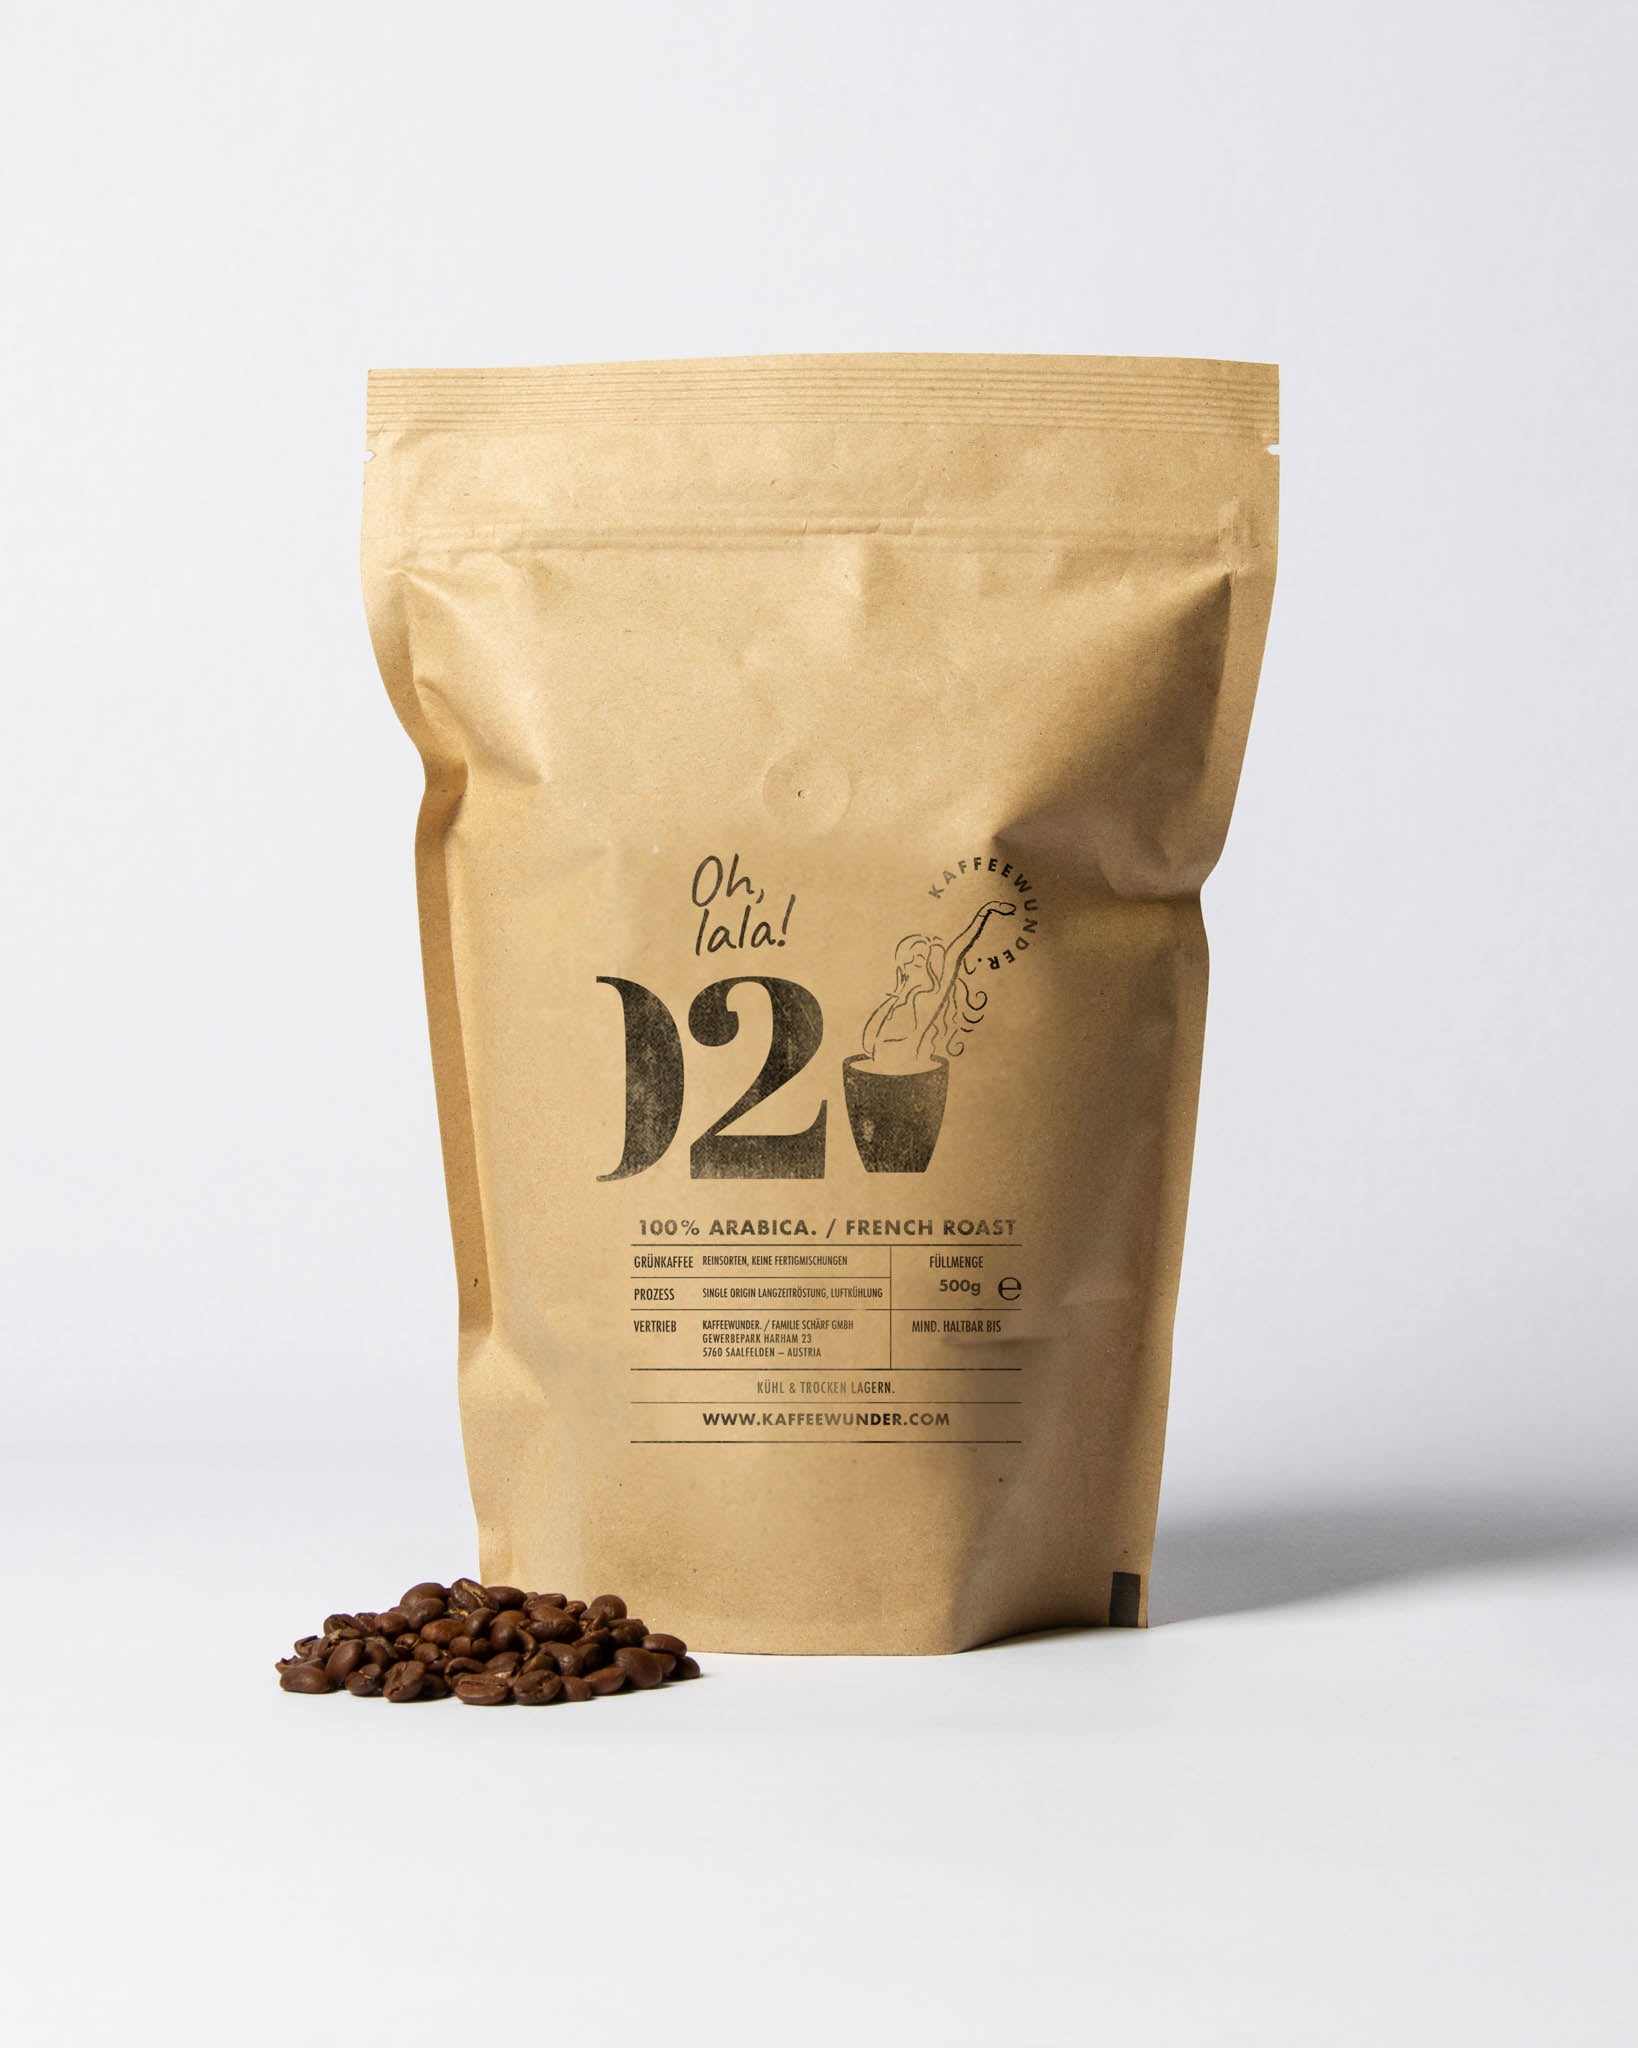 Kaffee-Arabica-frenchroast-kaffeewunder-nr02-500g